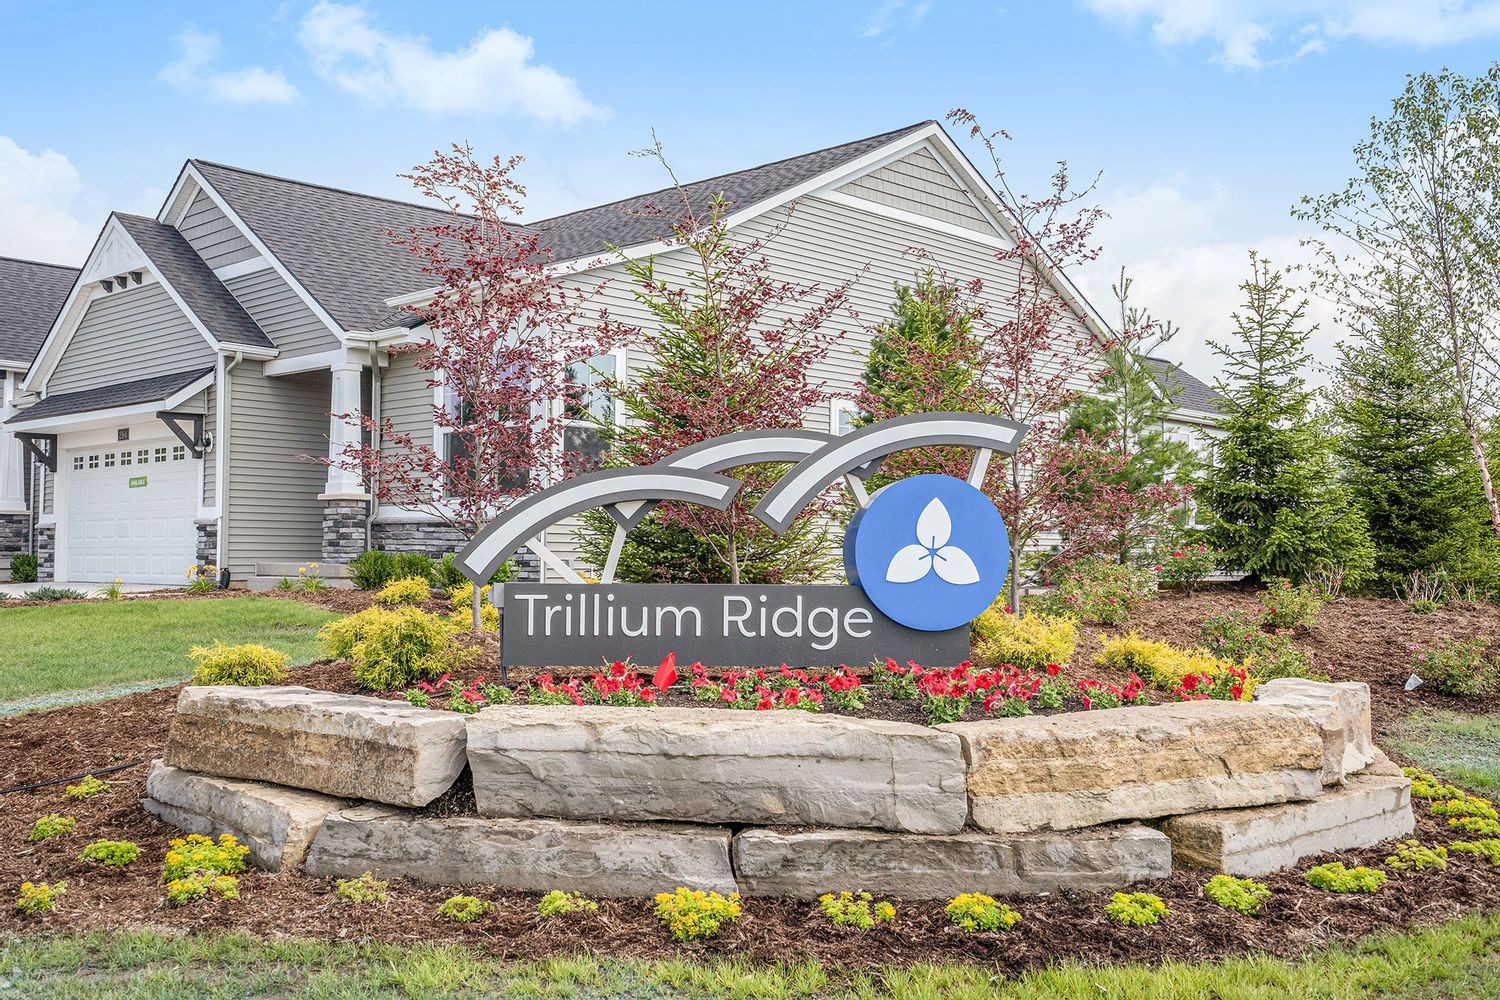 Trillium Ridge Image